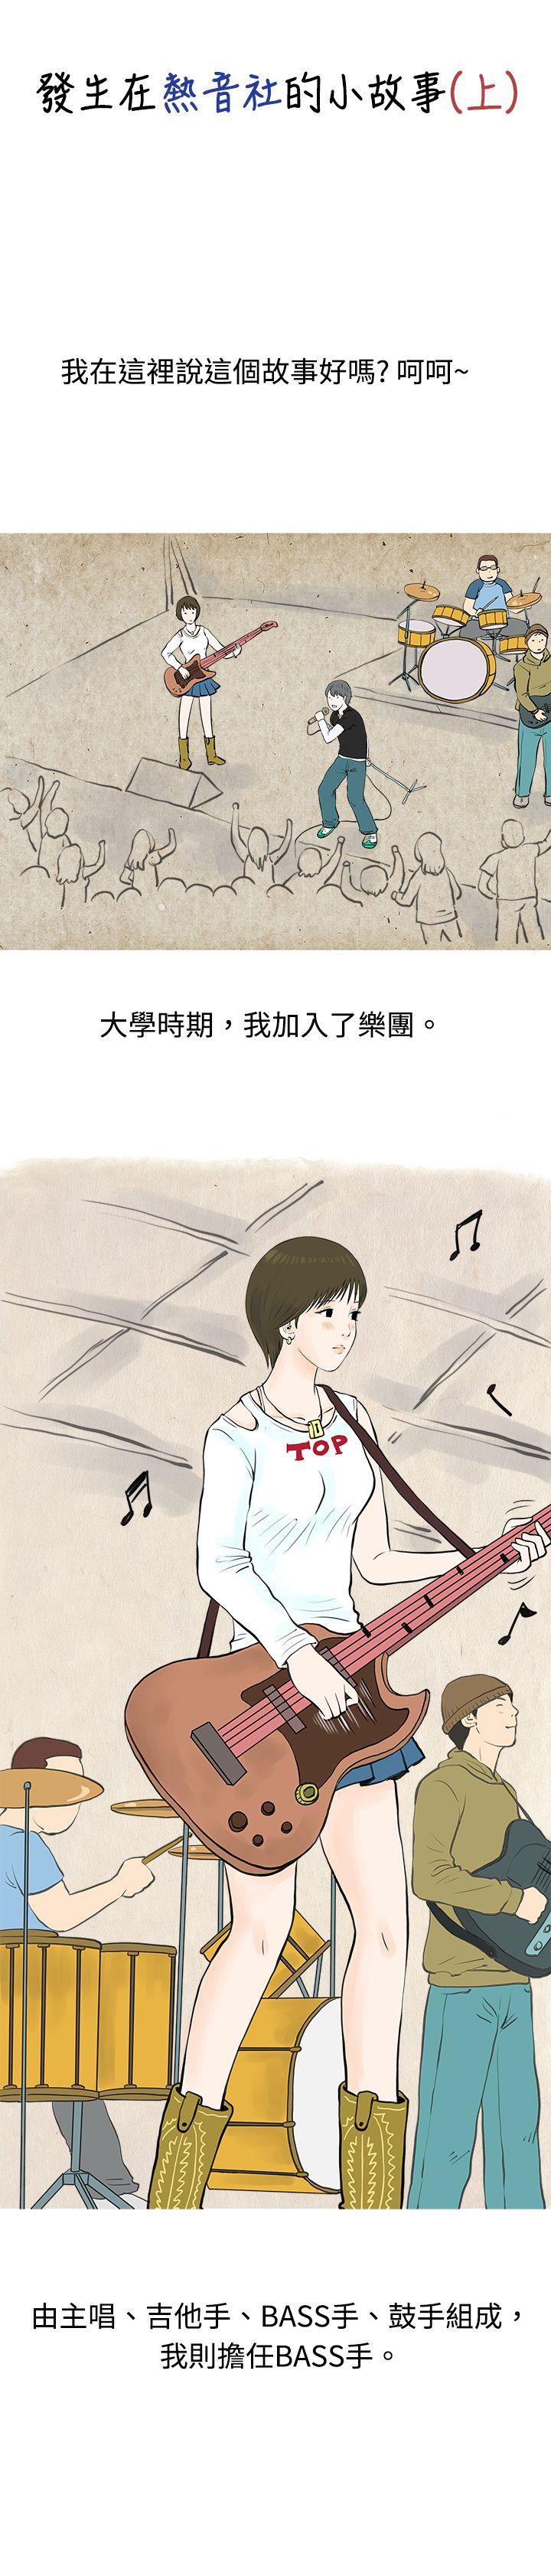 韩国污漫画 秘密Story 发生在热音社的小故事(上) 1